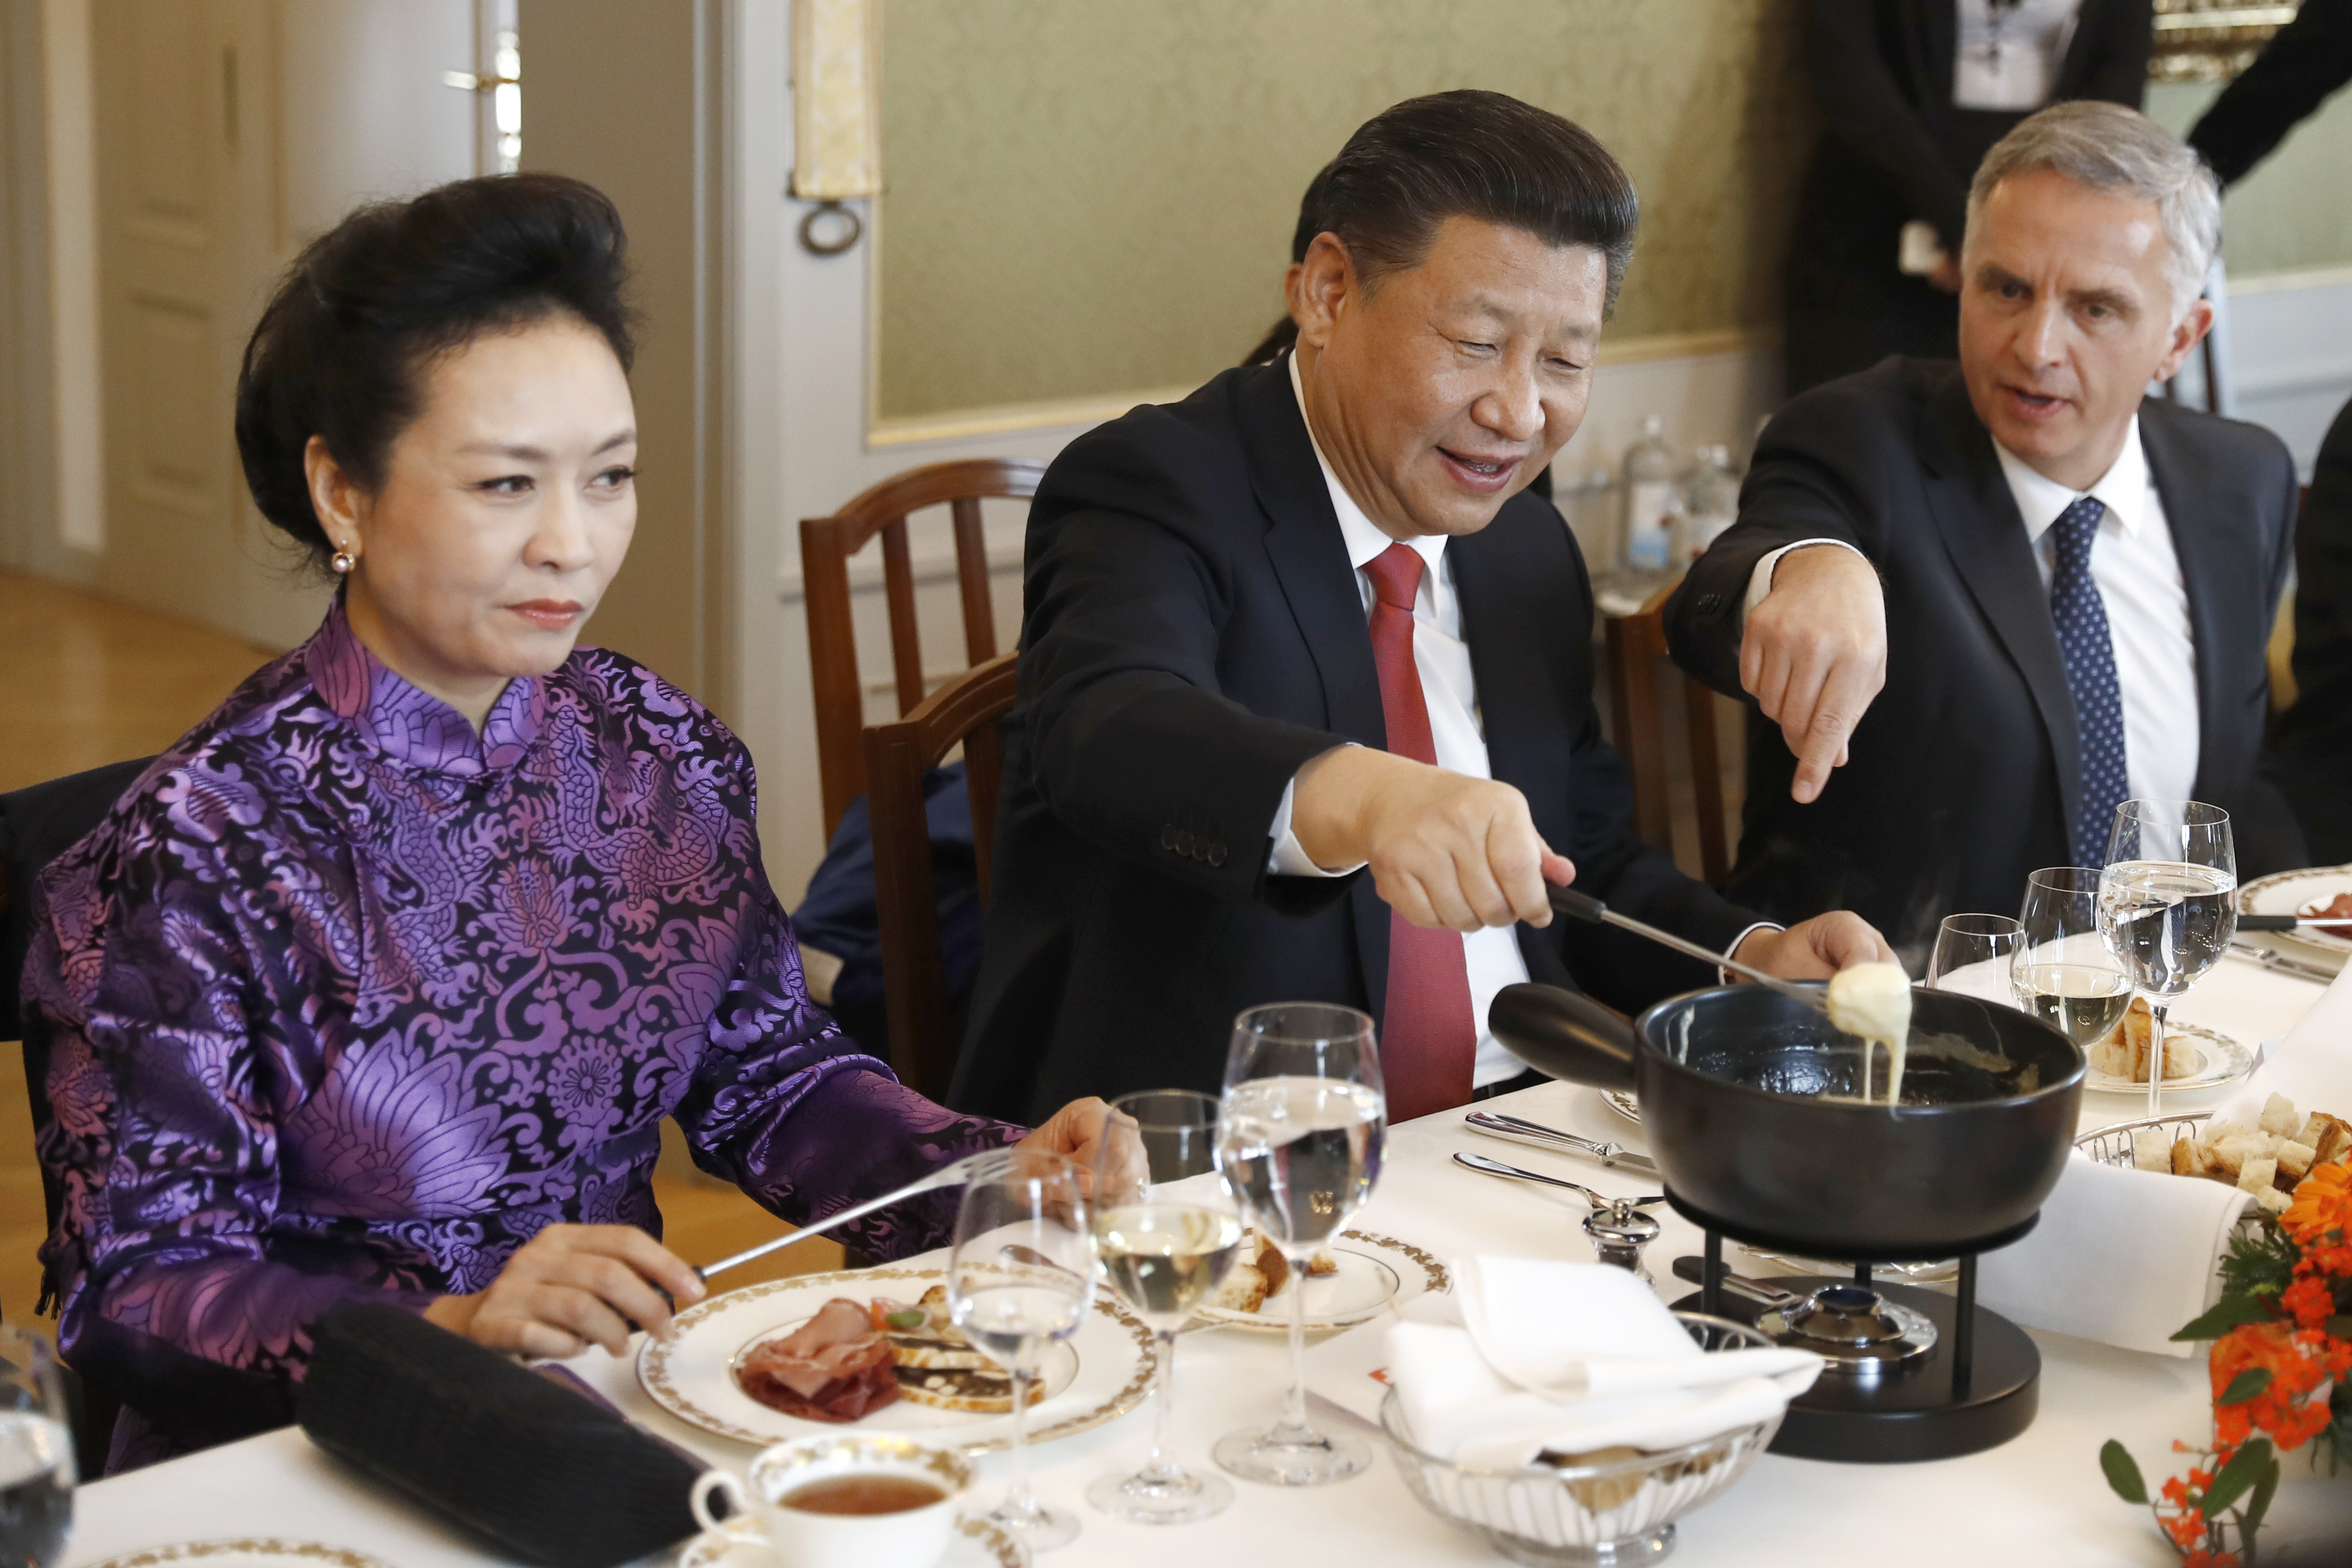 El presidente de China, Xi Jinping, en el centro, su esposa Peng Liyuan, a la izquierda, y el ministro suizo de Exteriores, Didier Burkhalter, comen queso suizo durante una comida en la visita de estado de dos días de Xi a Suiza, en Berna, Suiza, el lunes 16 de enero de 2017.  (Peter Klaunzer/Pool Foto via AP)